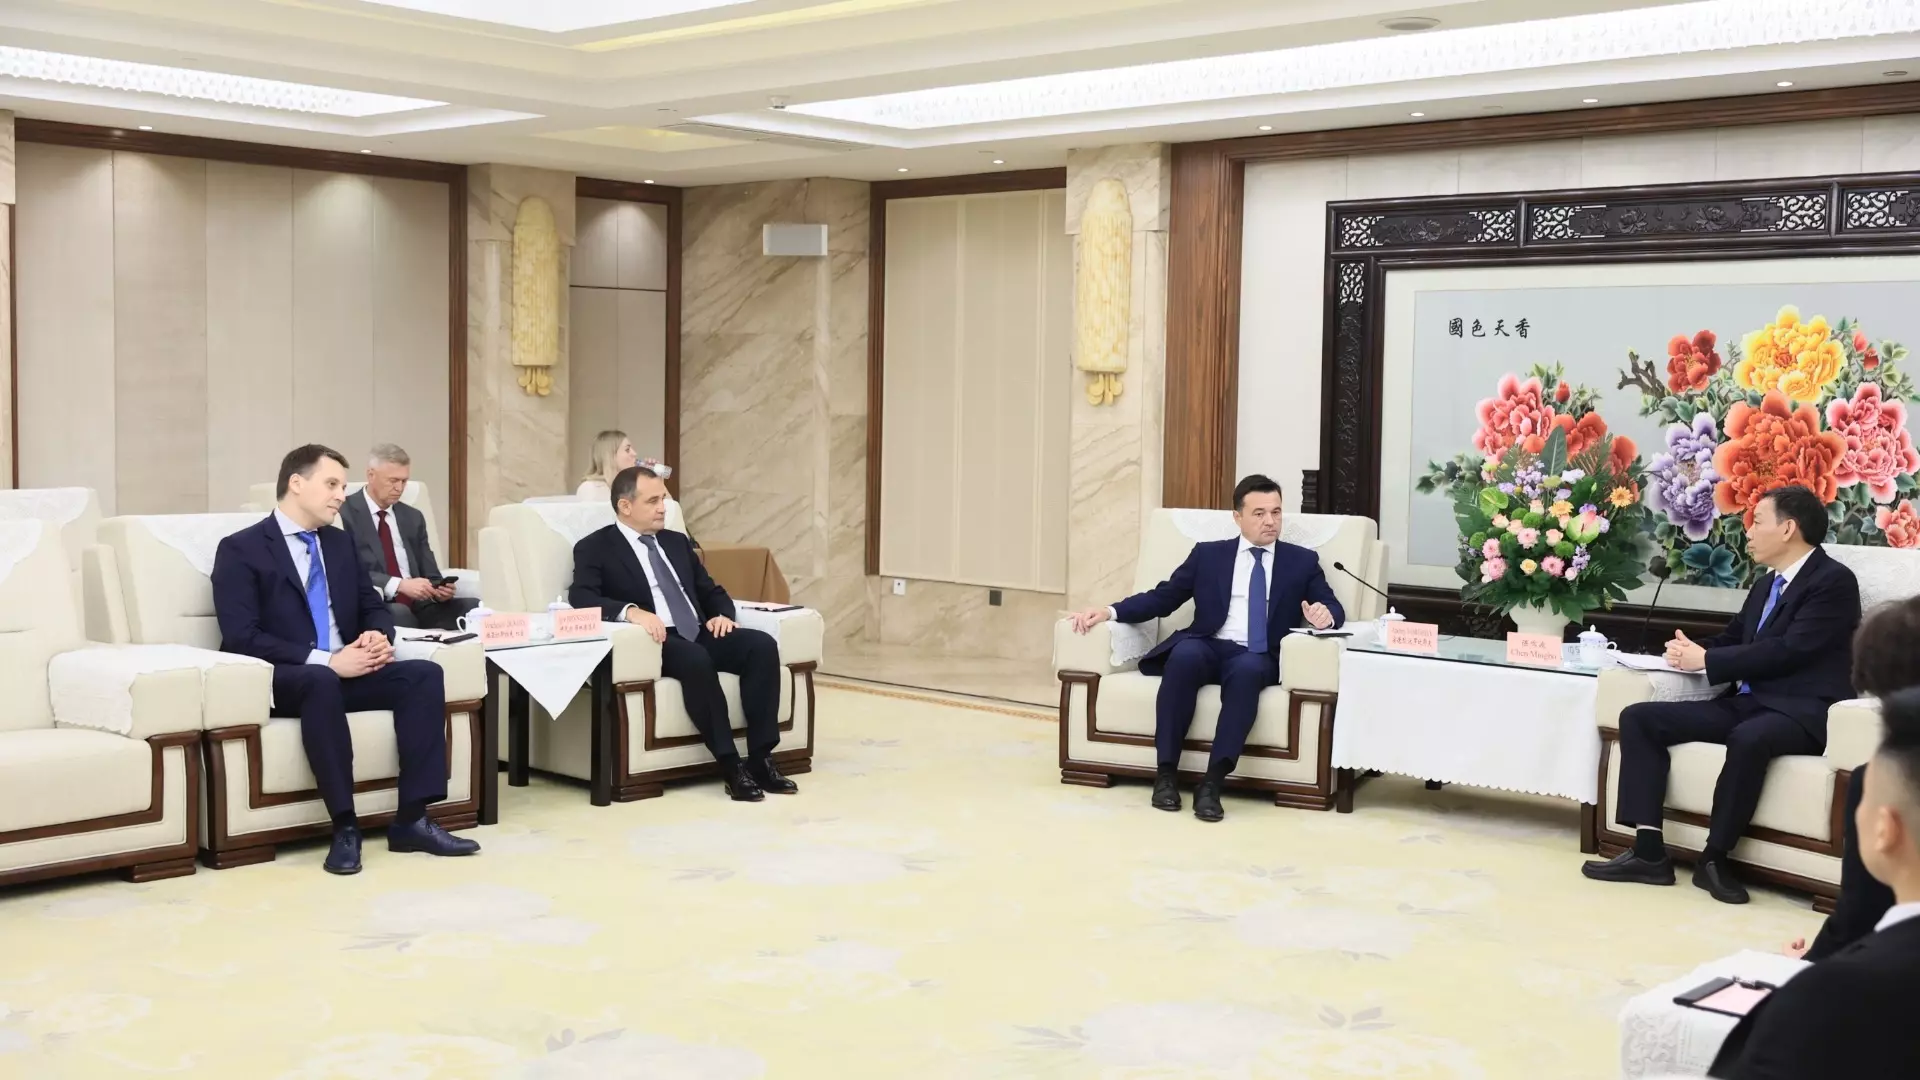 Воробьев: На встрече с первым заместителем мэра города Чунцин обсудили сотрудничество